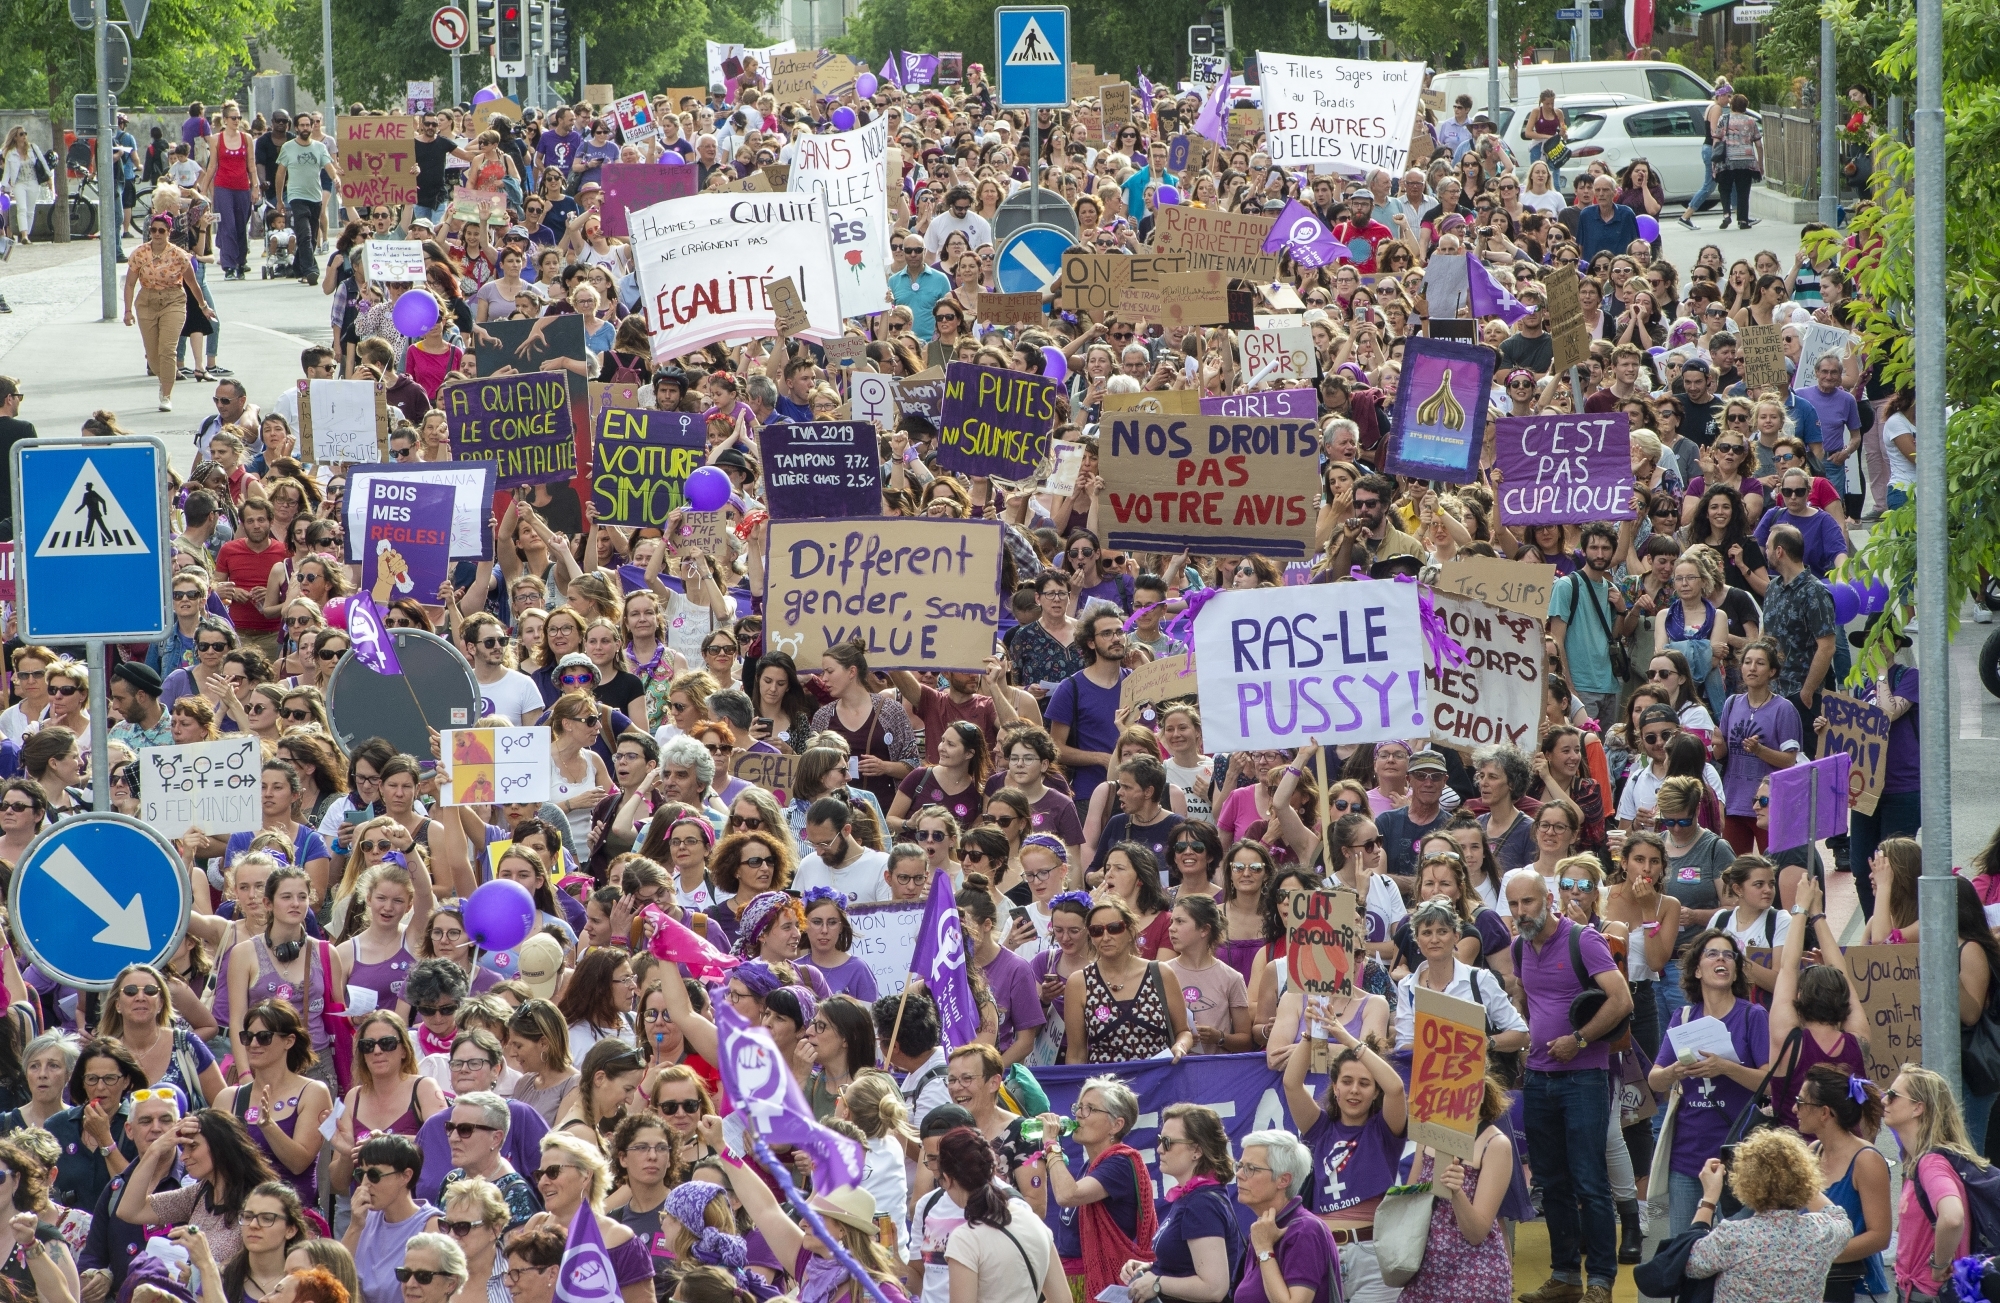 La grève des femmes avait rassemblé 12 000 personnes – une grande majorité de femmes, mais également des hommes – dans les rues de Sion le 14 juin 2019.